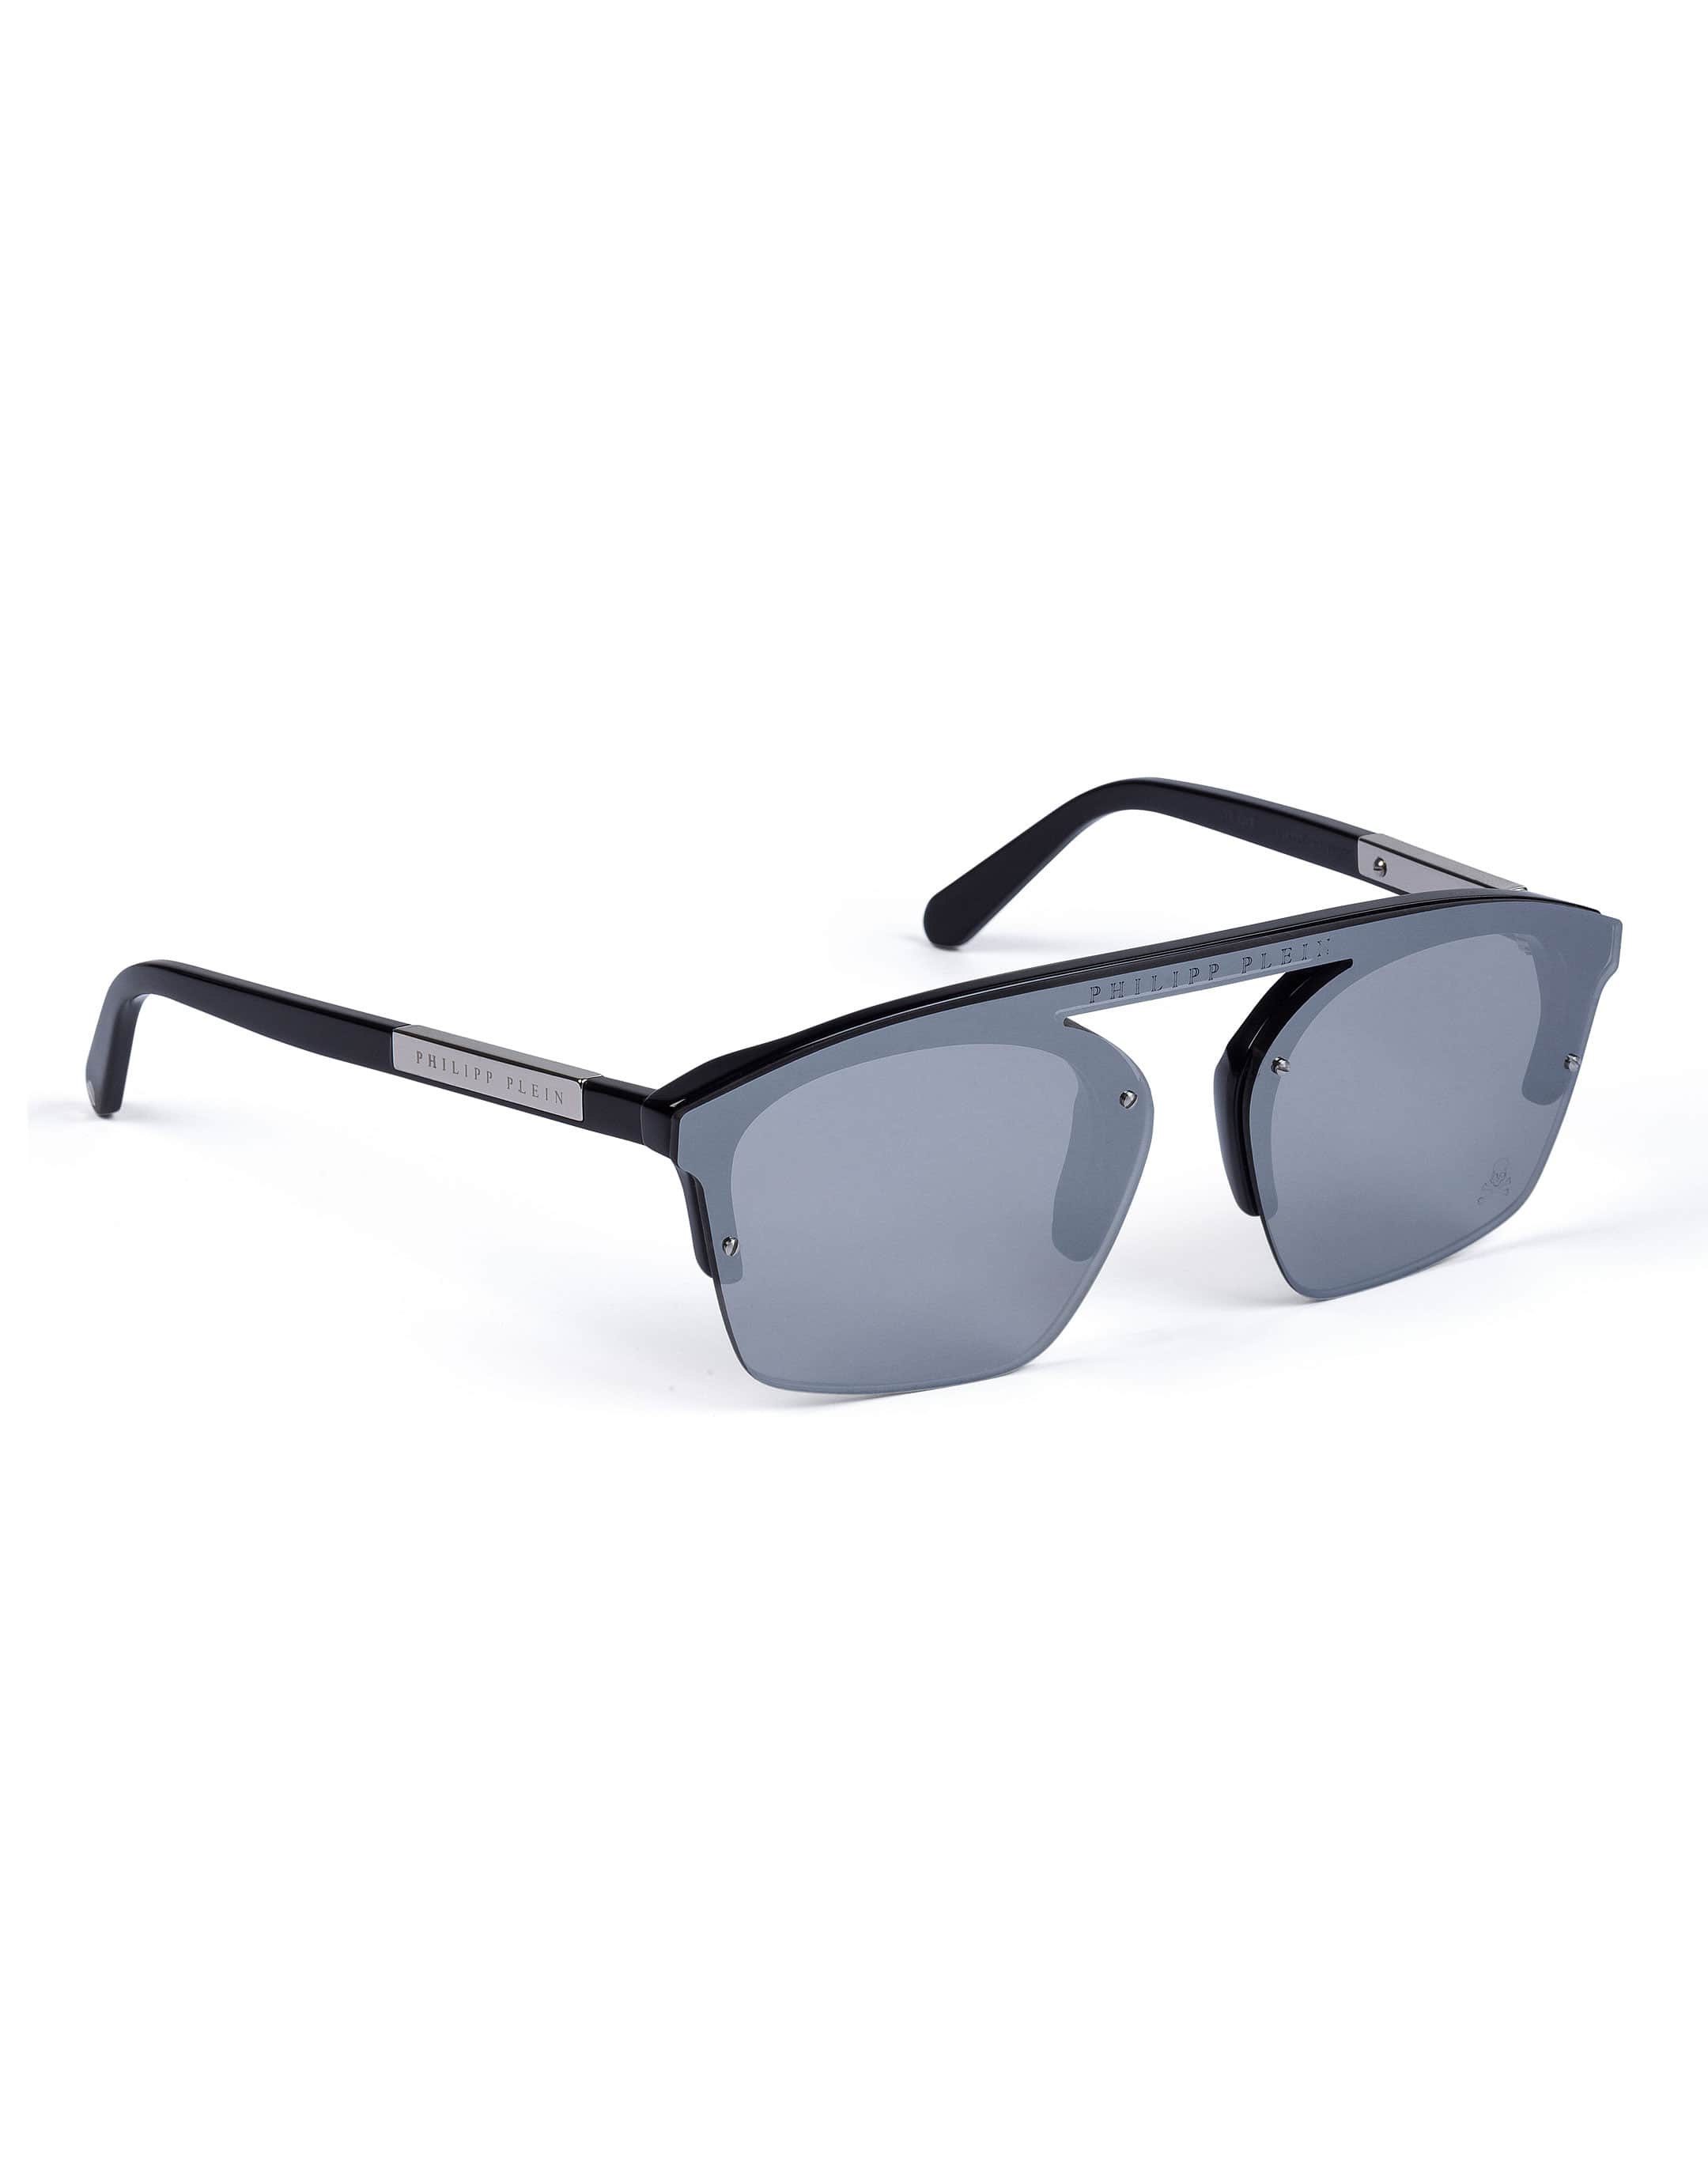 Sunglasses "decide" | Philipp Plein Outlet